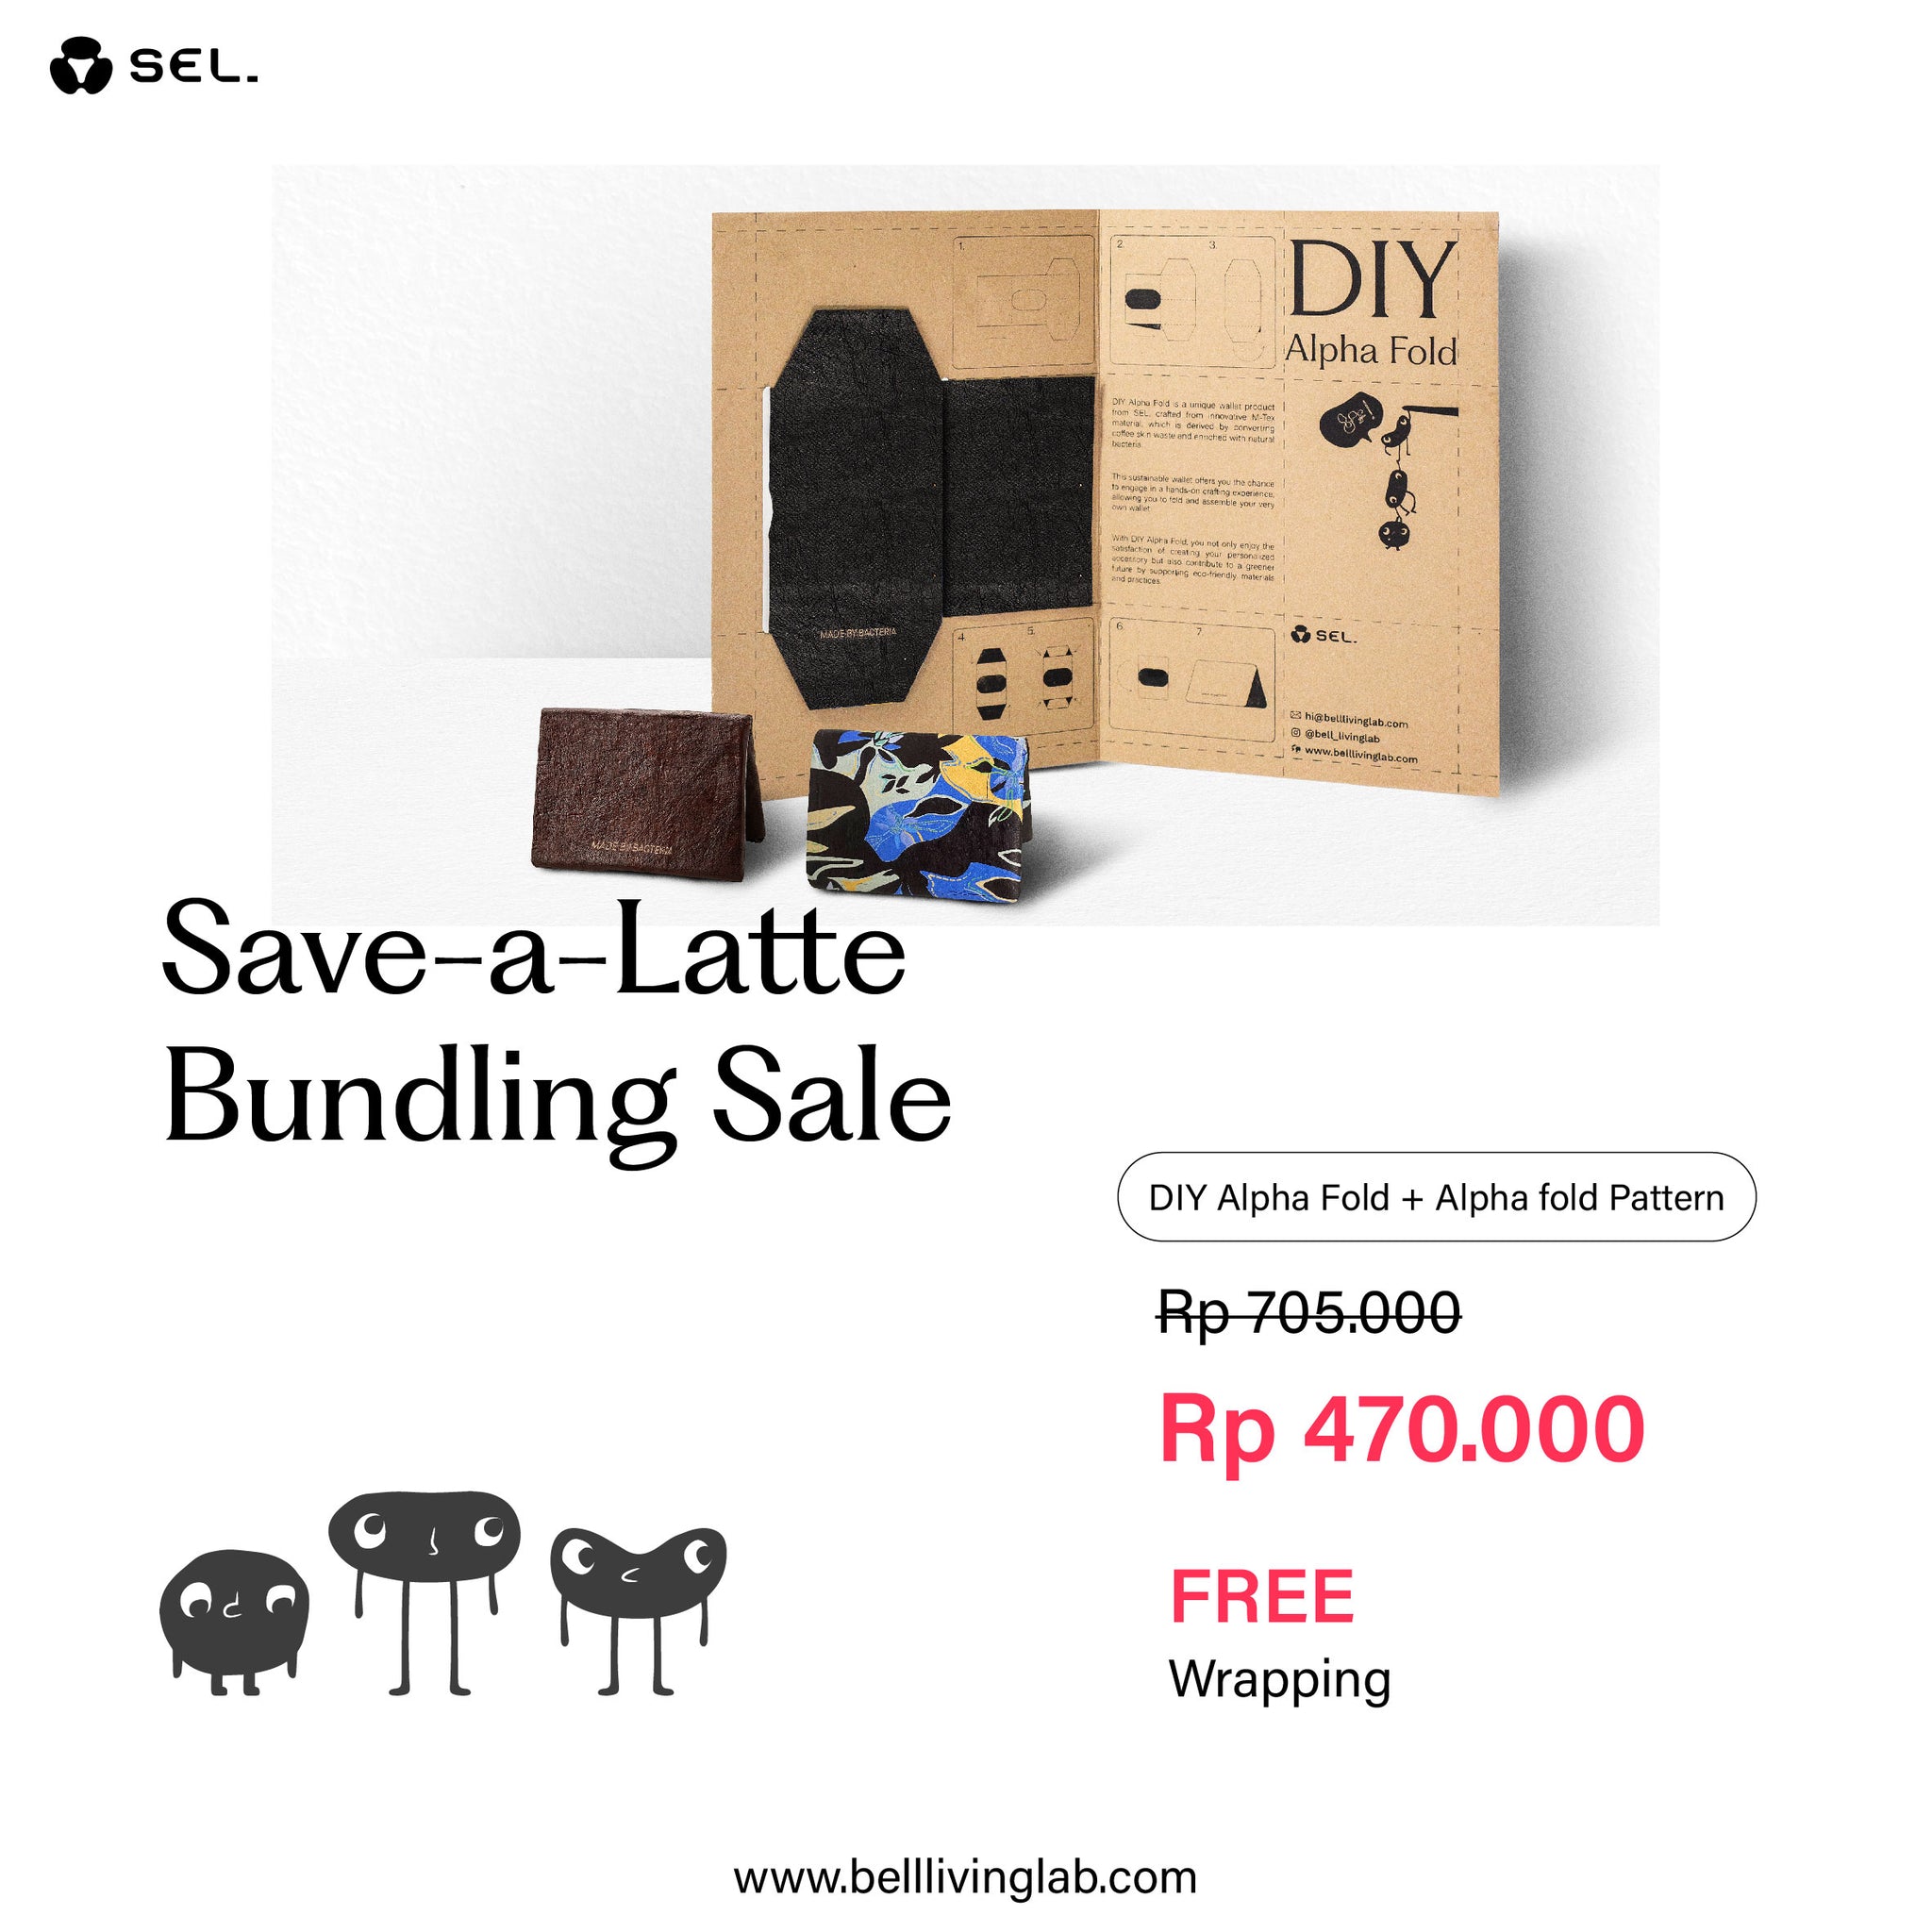 Save-a-Latte Bundling Sale DIY Alpha Fold + Alpha Fold Pattern